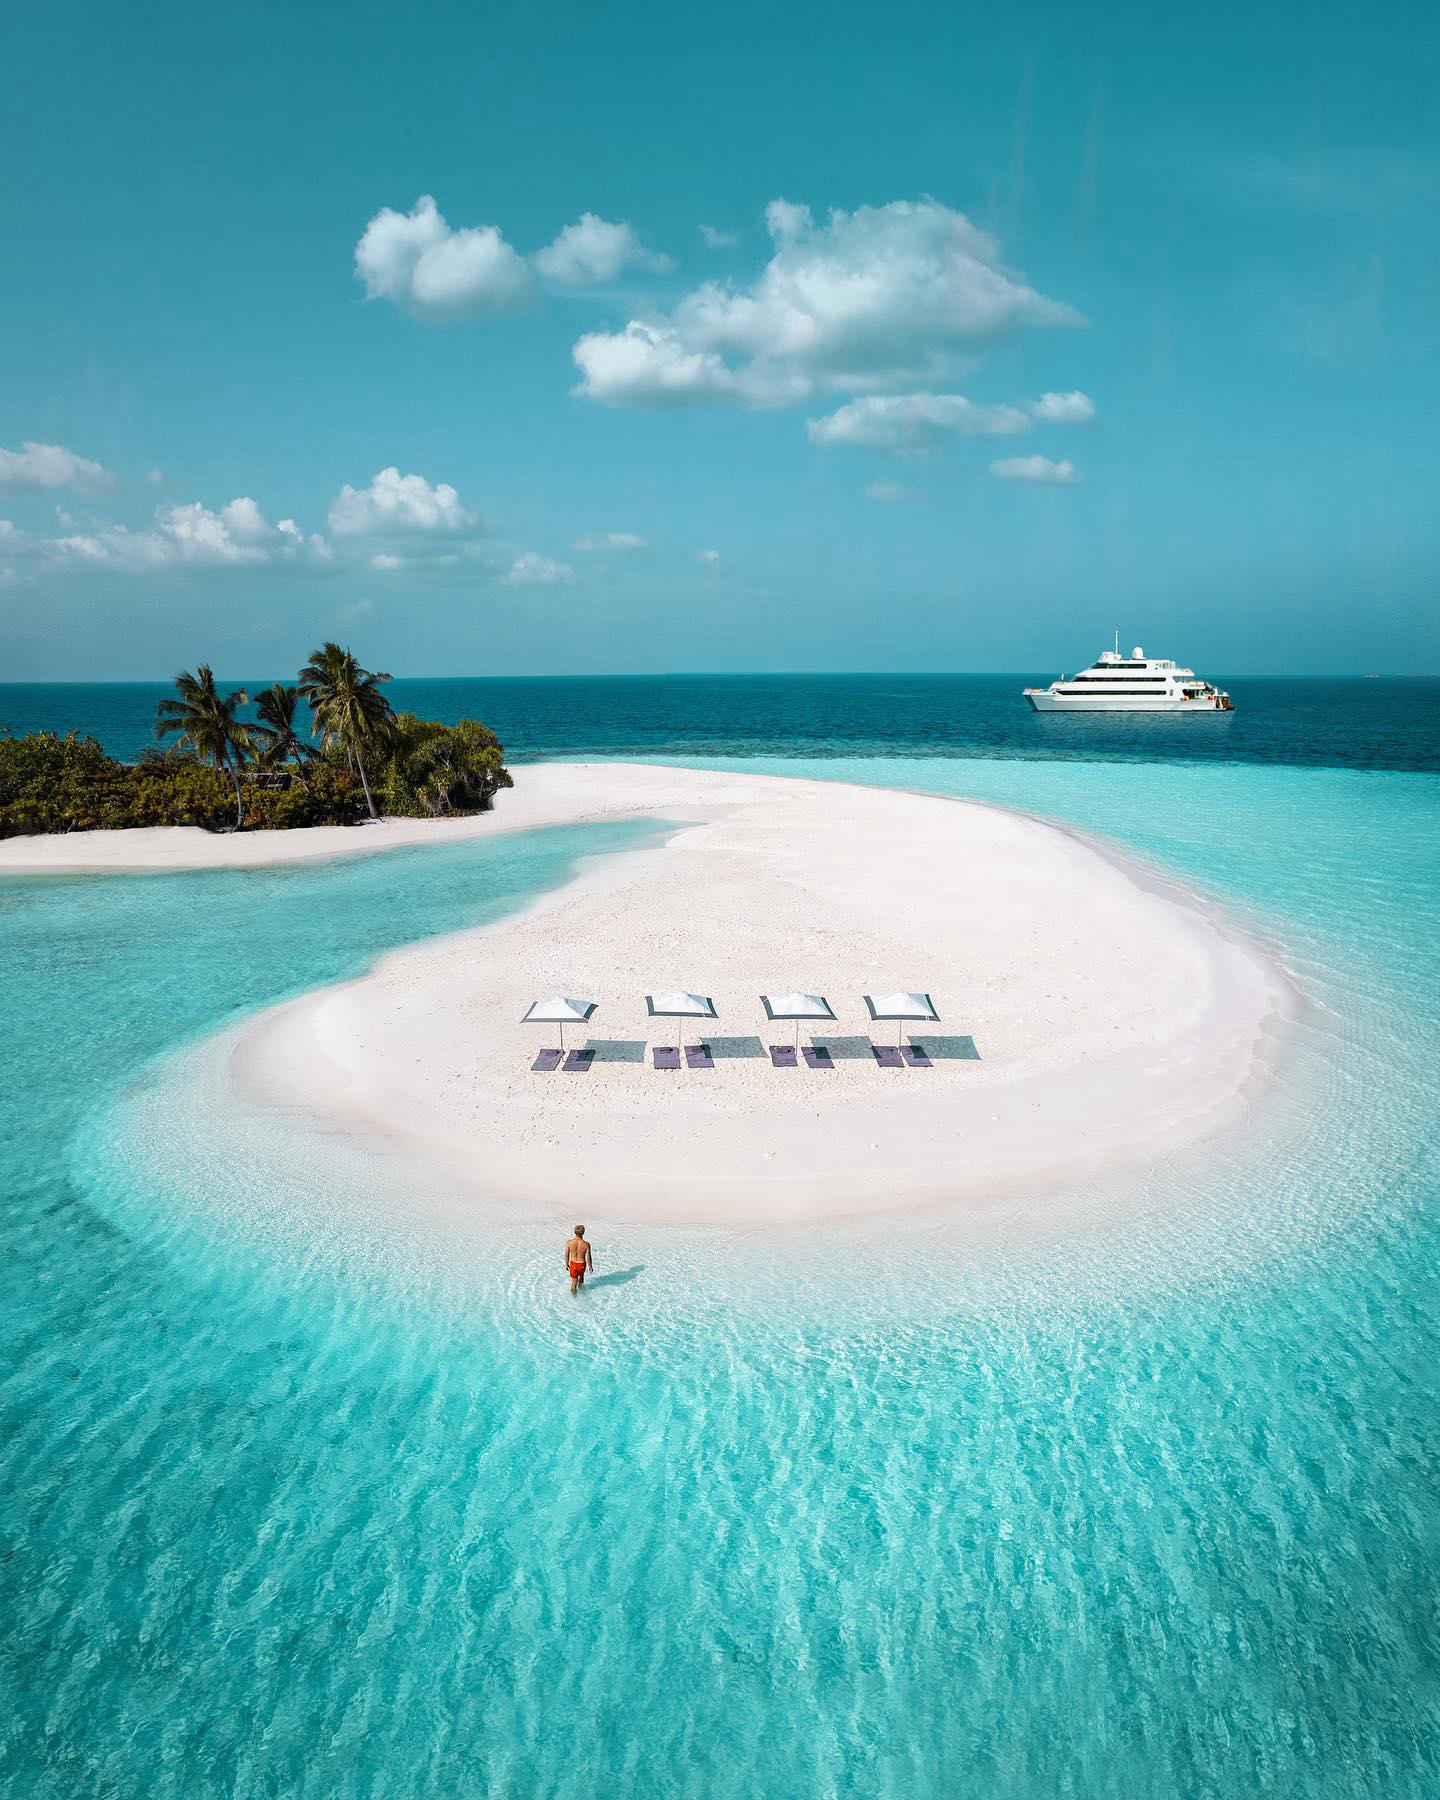 ➳ 	Λ L E X - Offering a unique opportunity to explore the stunning archipelago of the Maldives, the